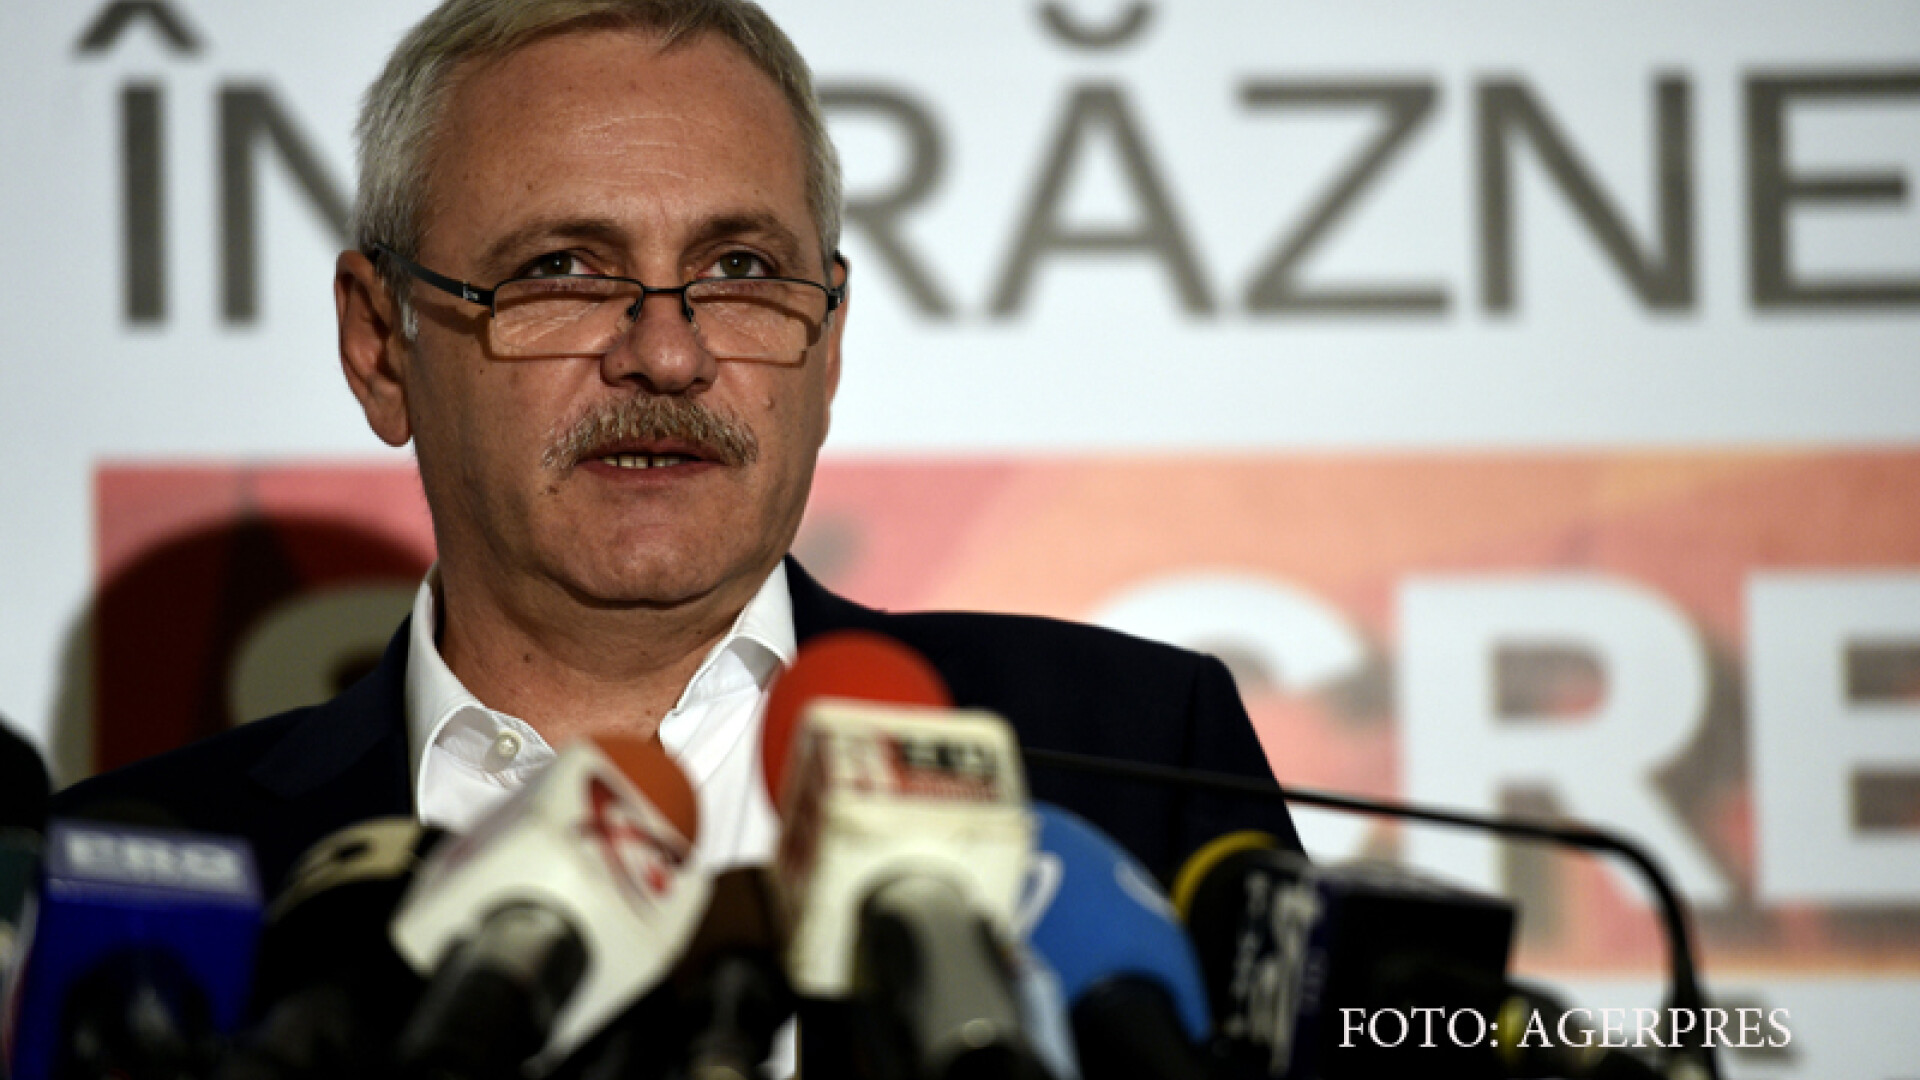 Presedintele PSD, Liviu Dragnea, sustine o conferinta de presa, la sediul partidului din Baneasa.